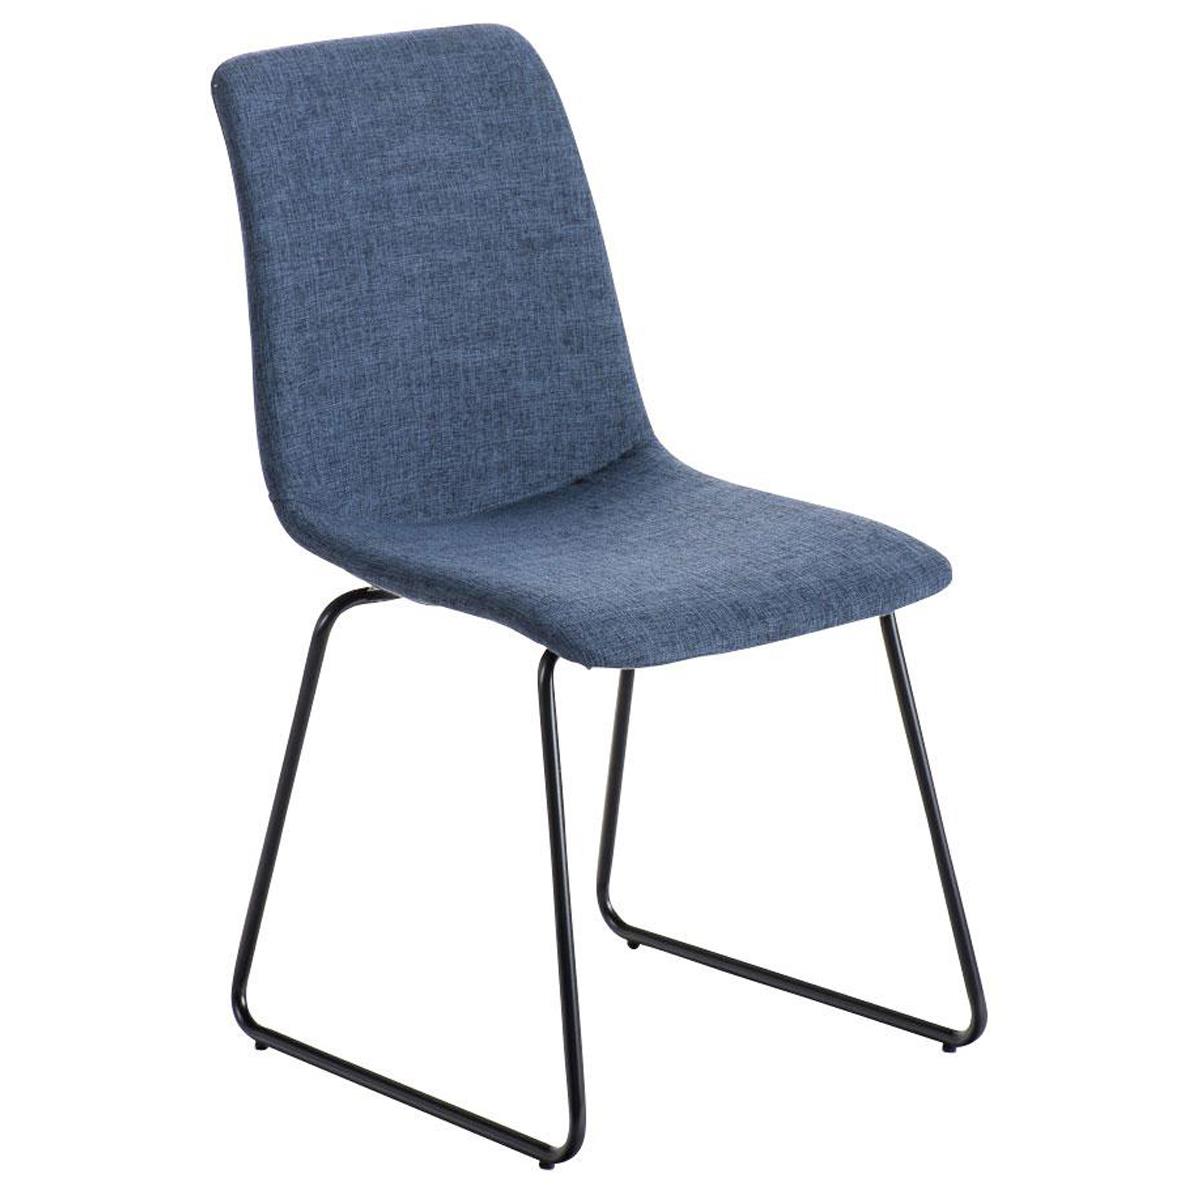 Chaise visiteur FRANCESC, Design Exclusif, Revêtement en Tissu, Bleu